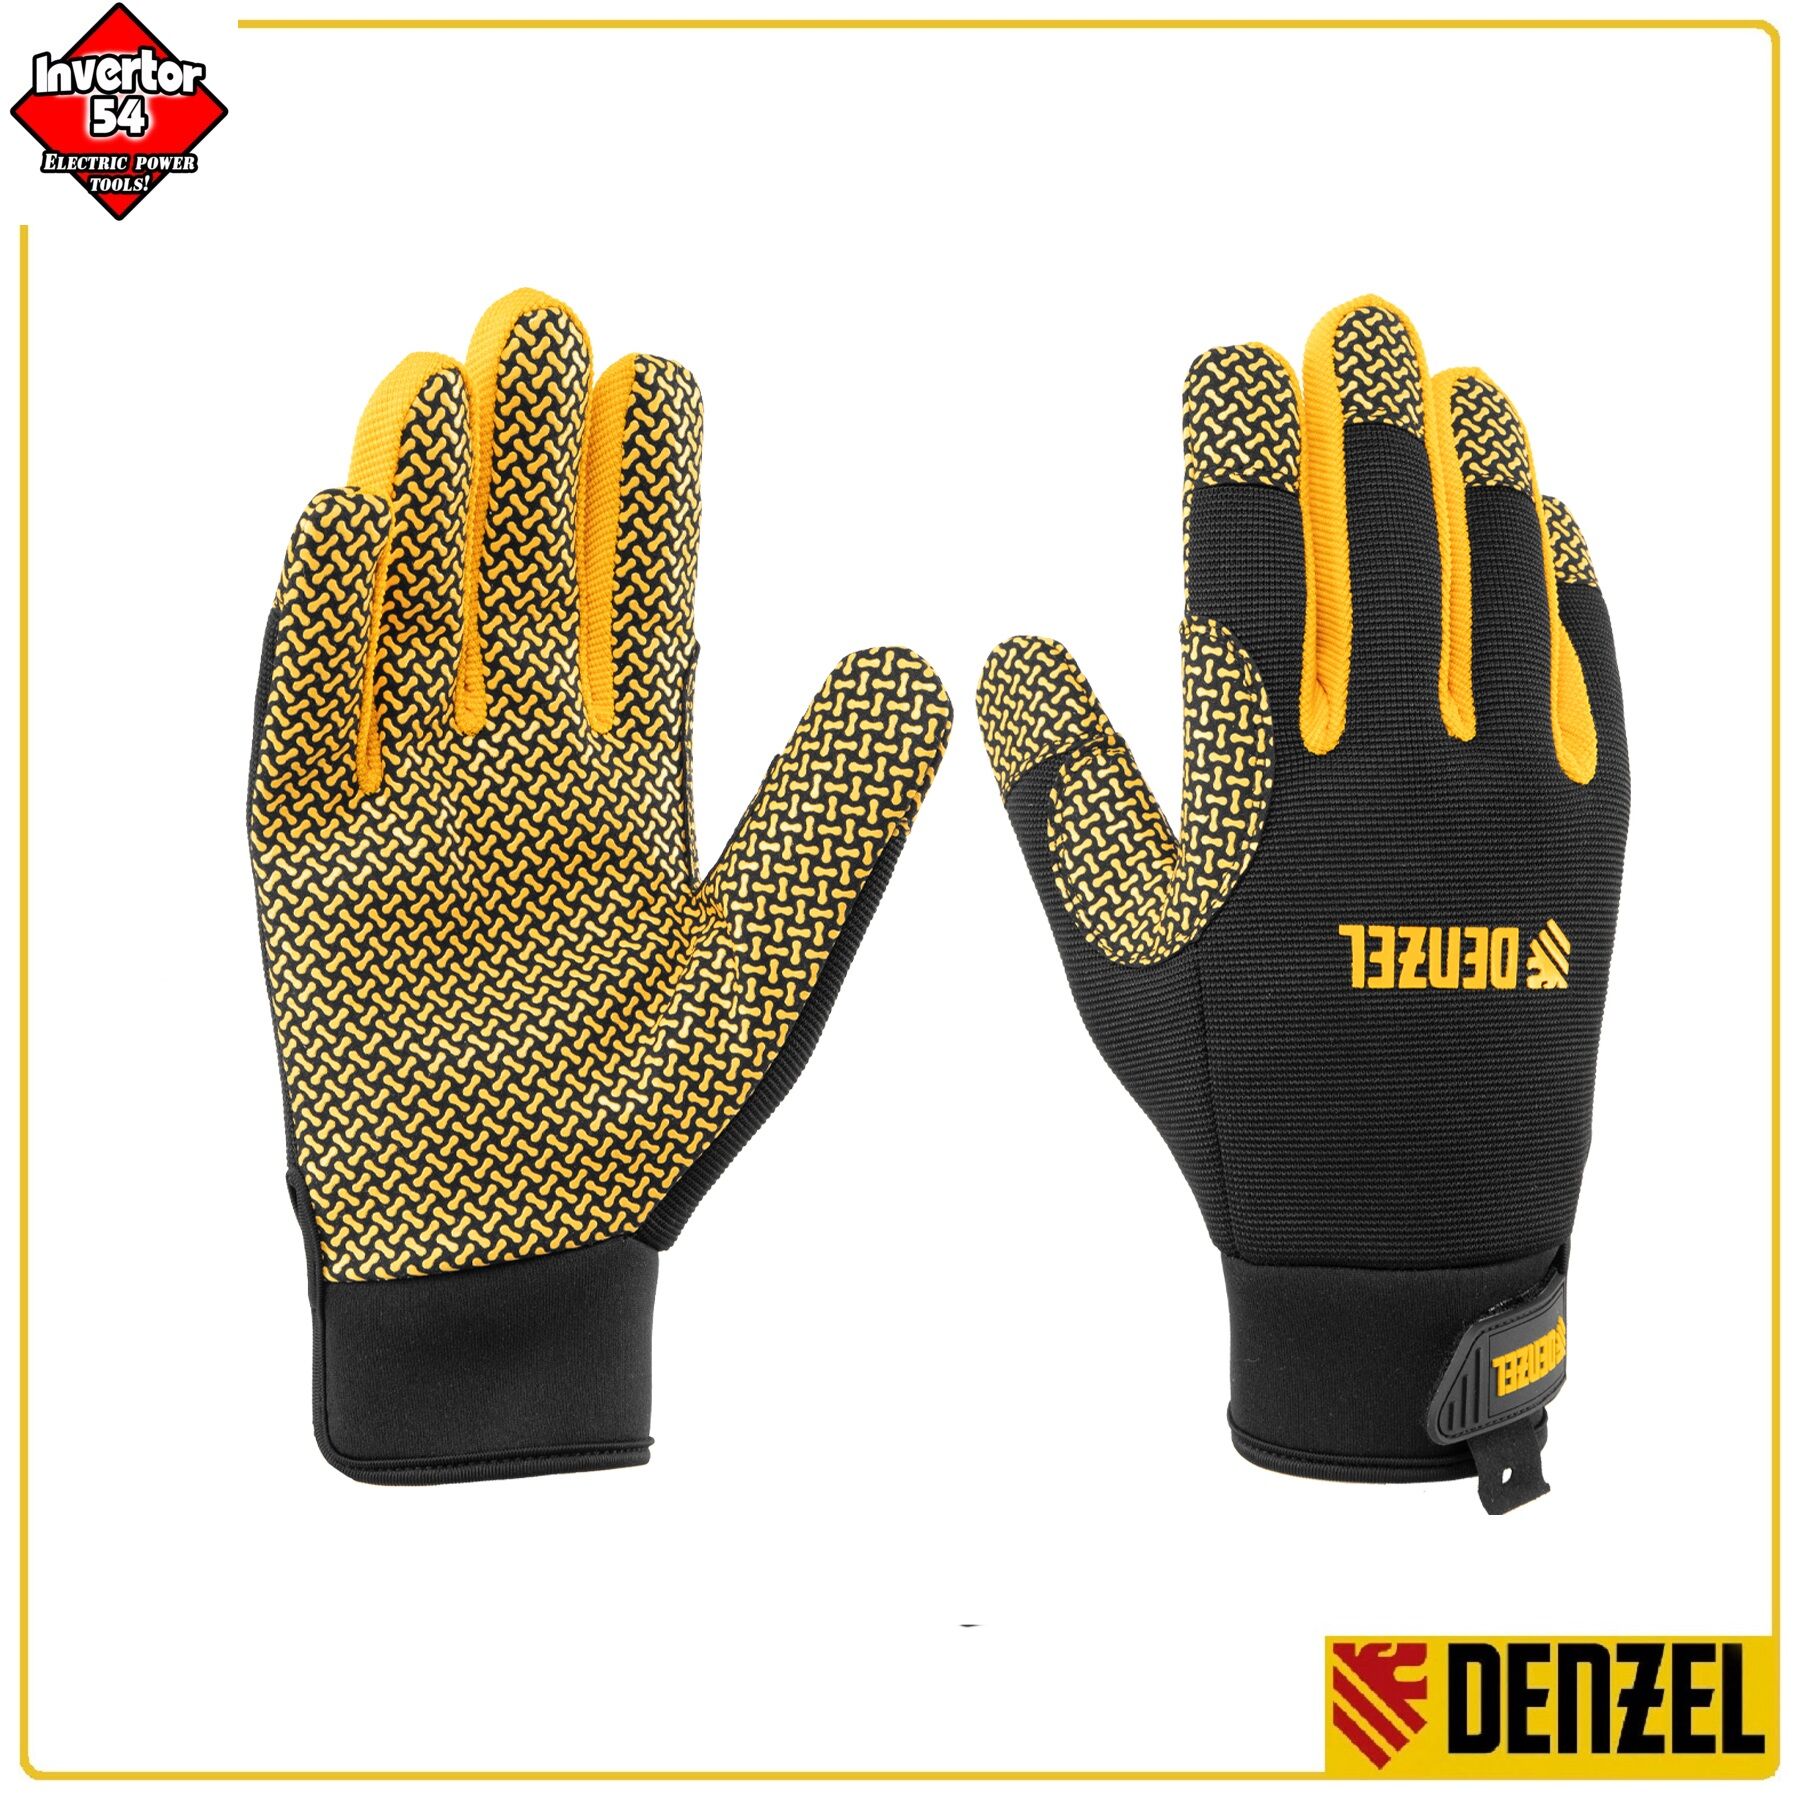 Универсальные перчатки Denzel 67999 (силиконовая ладонь)